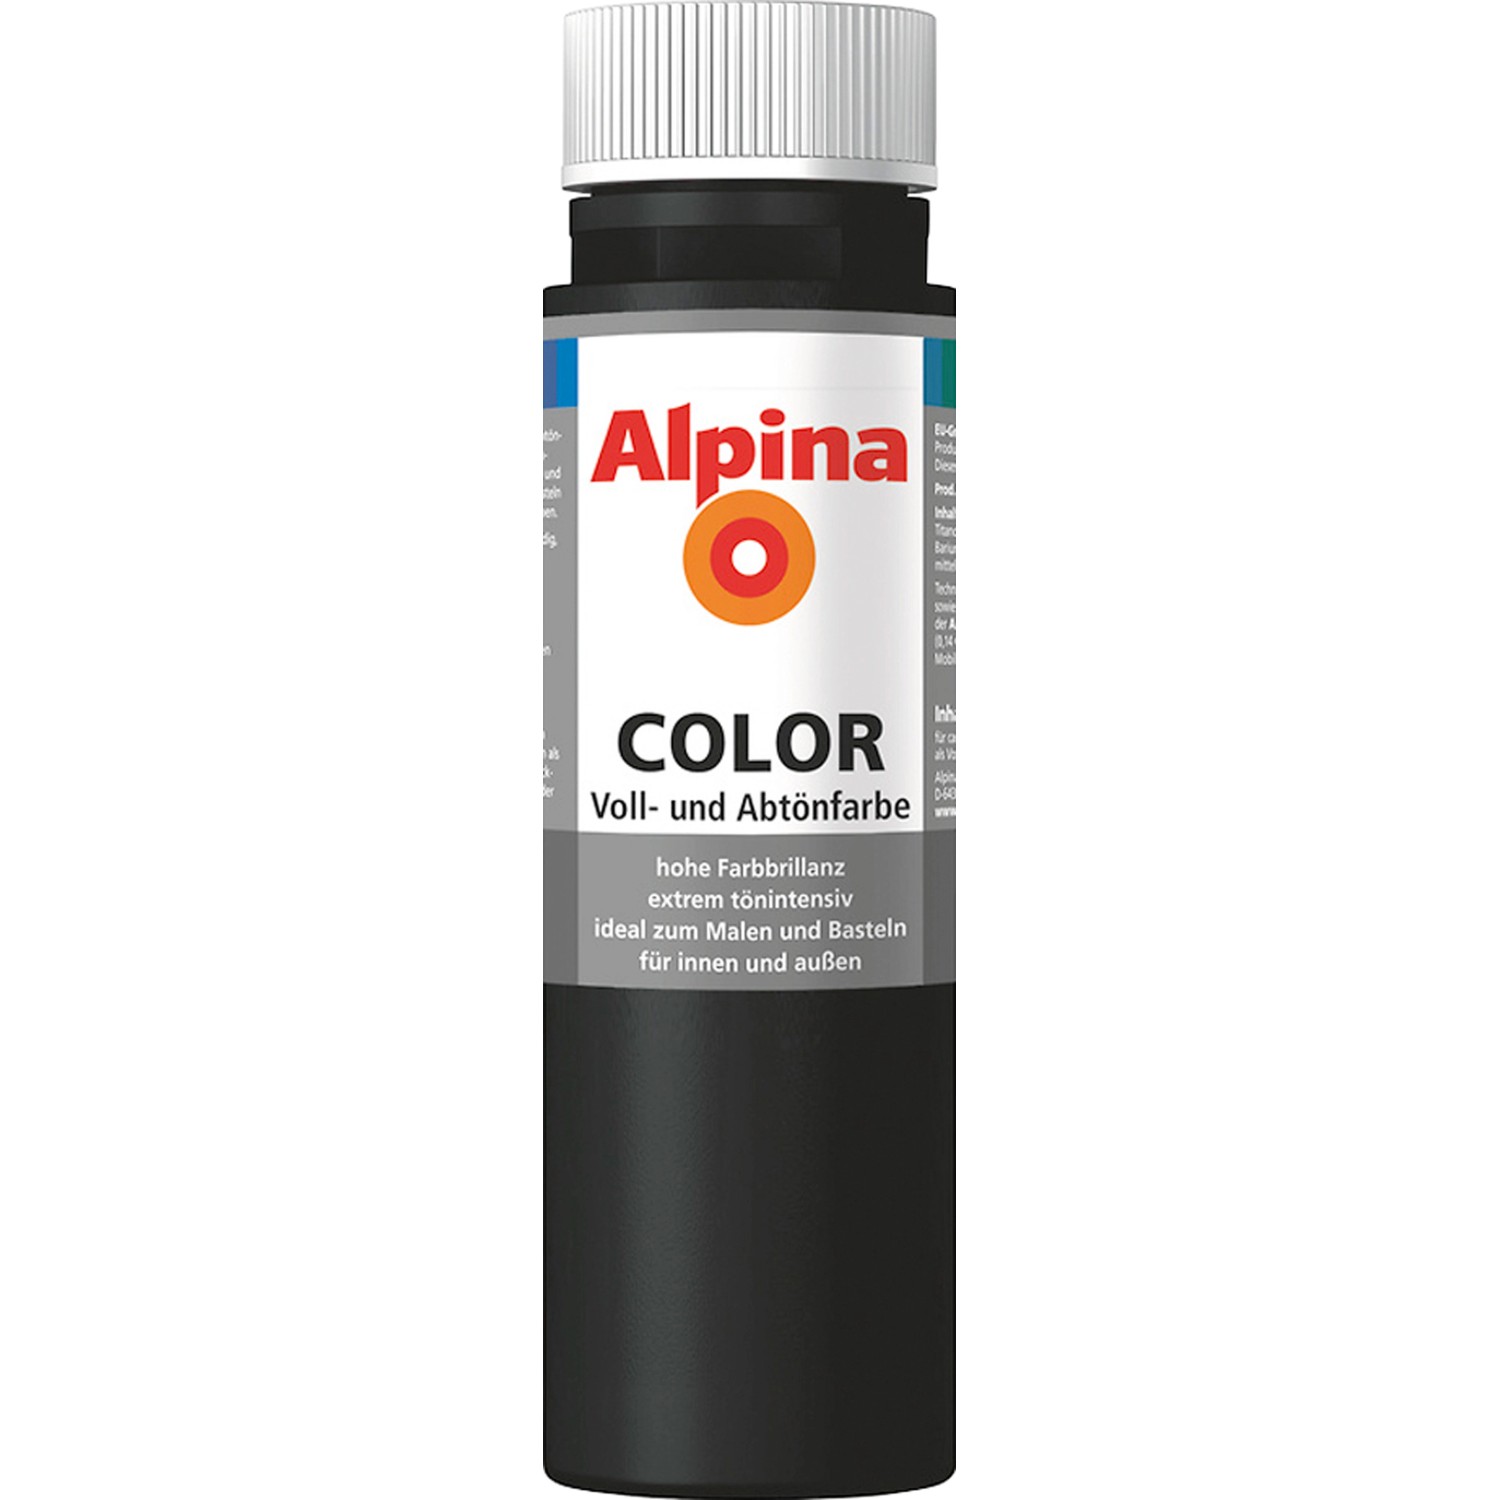 Alpina Color Night Black seidenmatt 250 ml